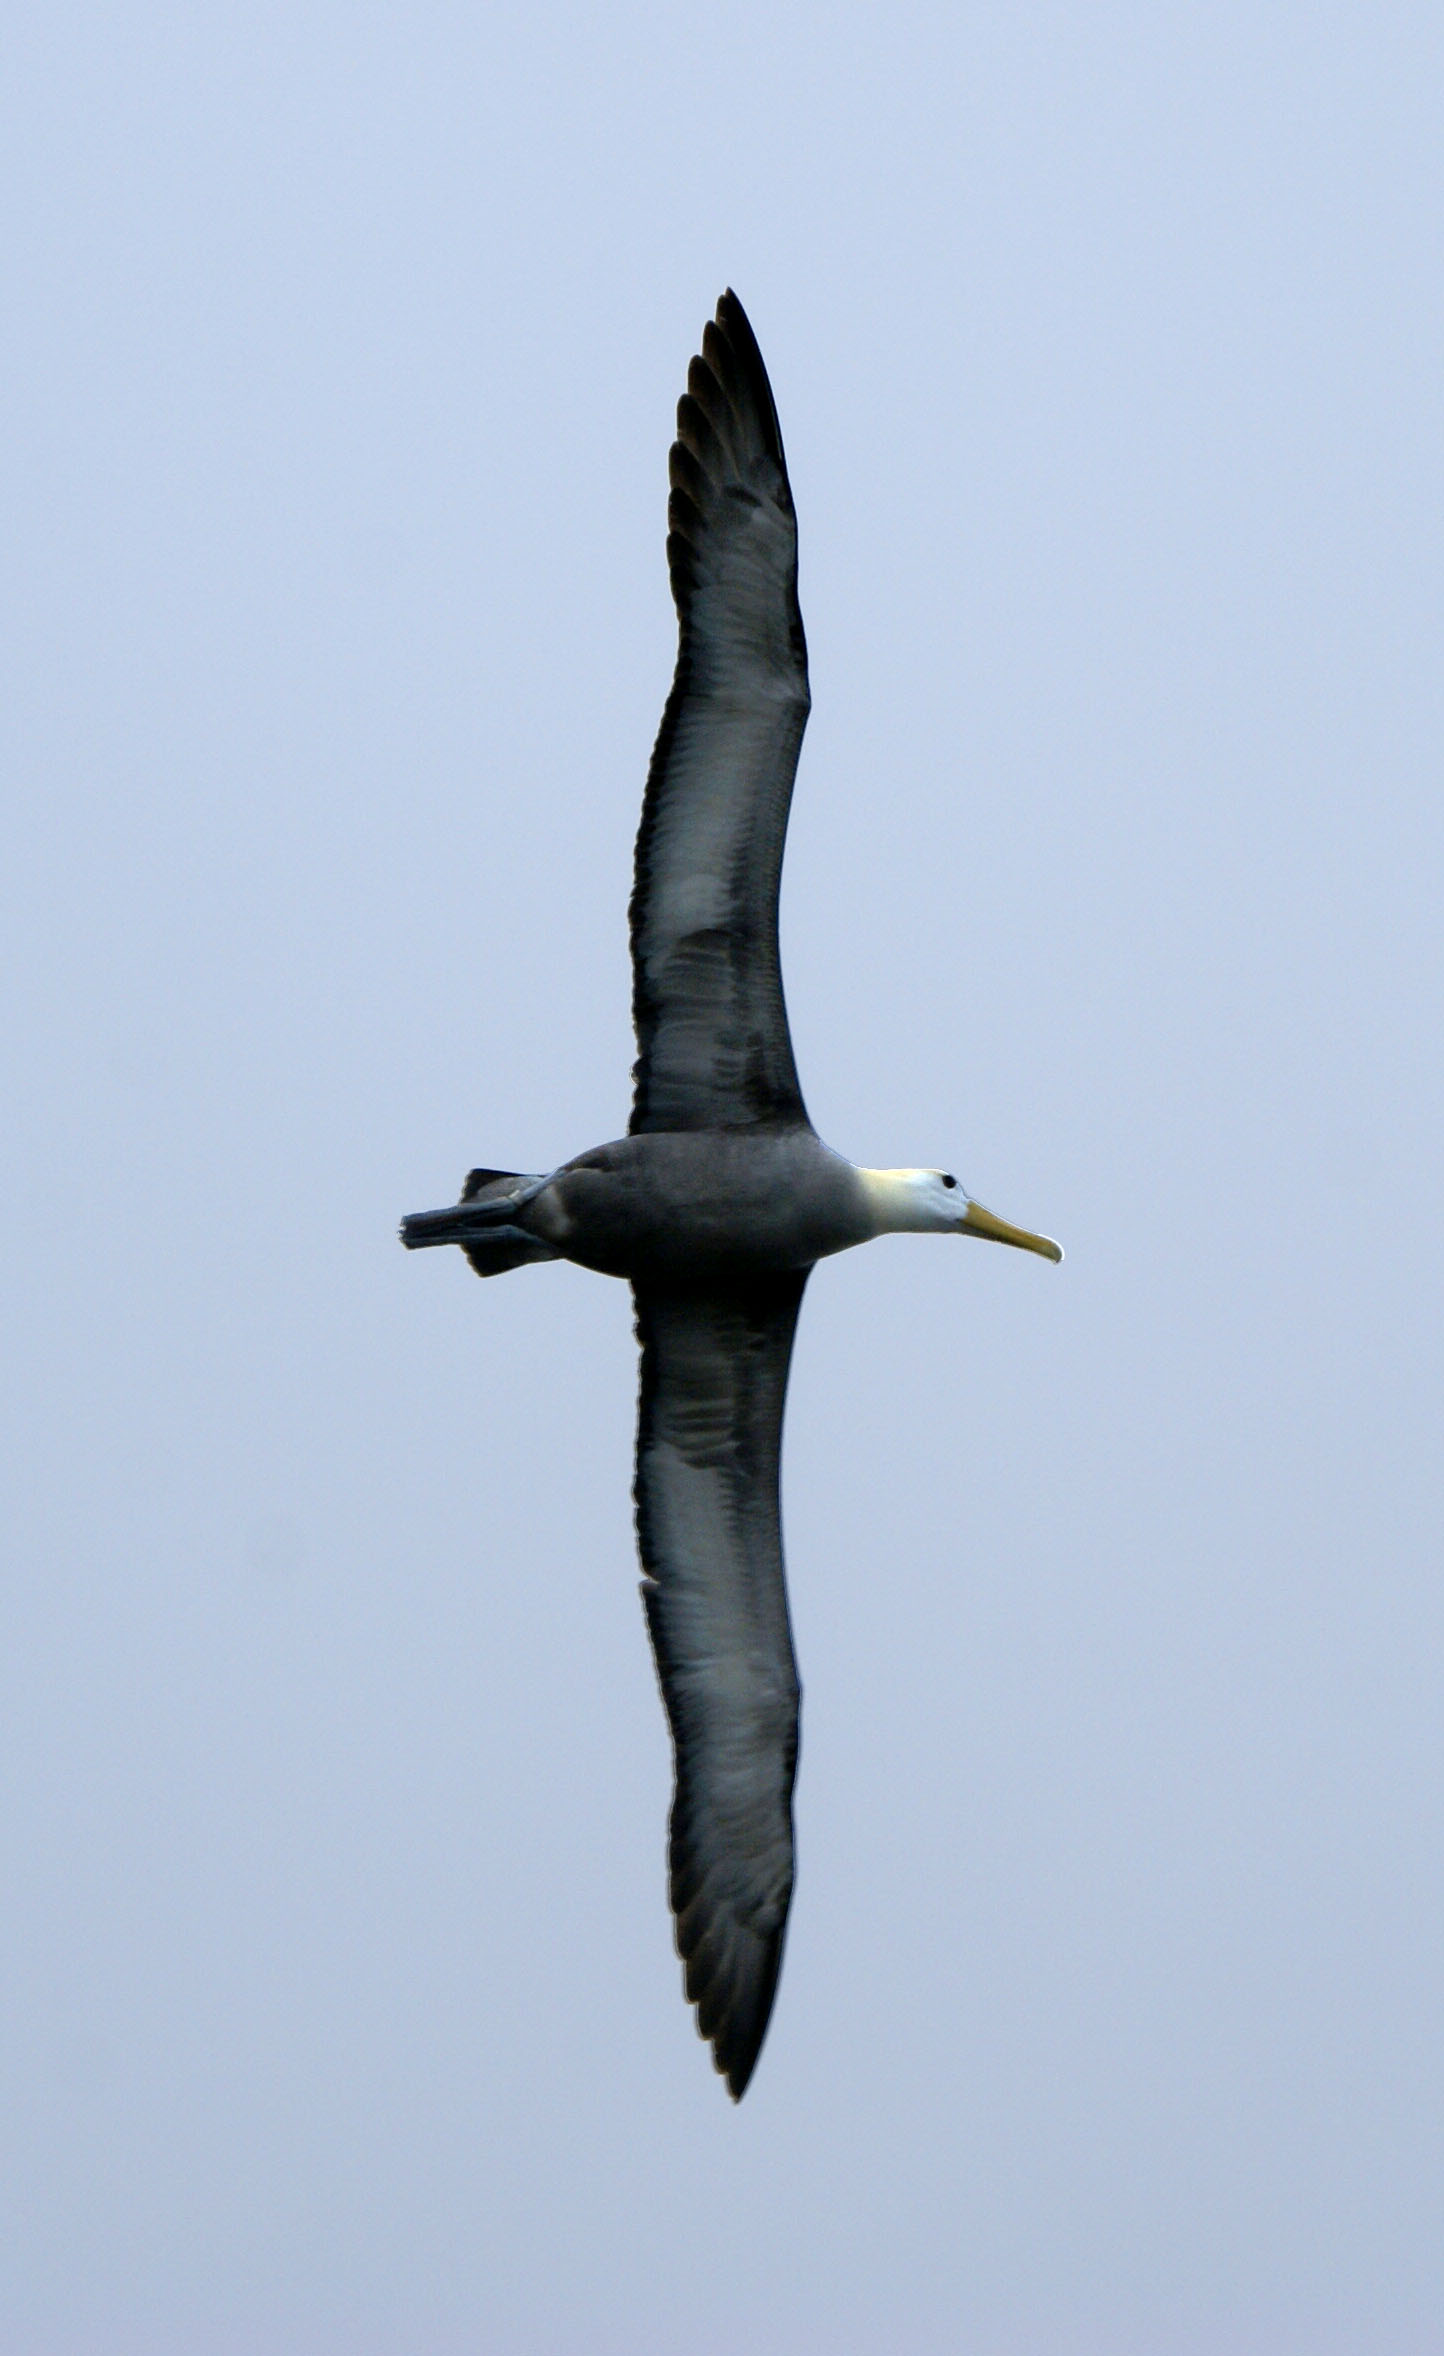 Pozoruhodná podoba - albatros galapážský (Phoebastria irrorata).  Středně velký albatros  s rozpětím křídel 220–250 cm. Hravě překonává tisícikilometrové vzdálenosti. V době hnízdění létá pro krmení 